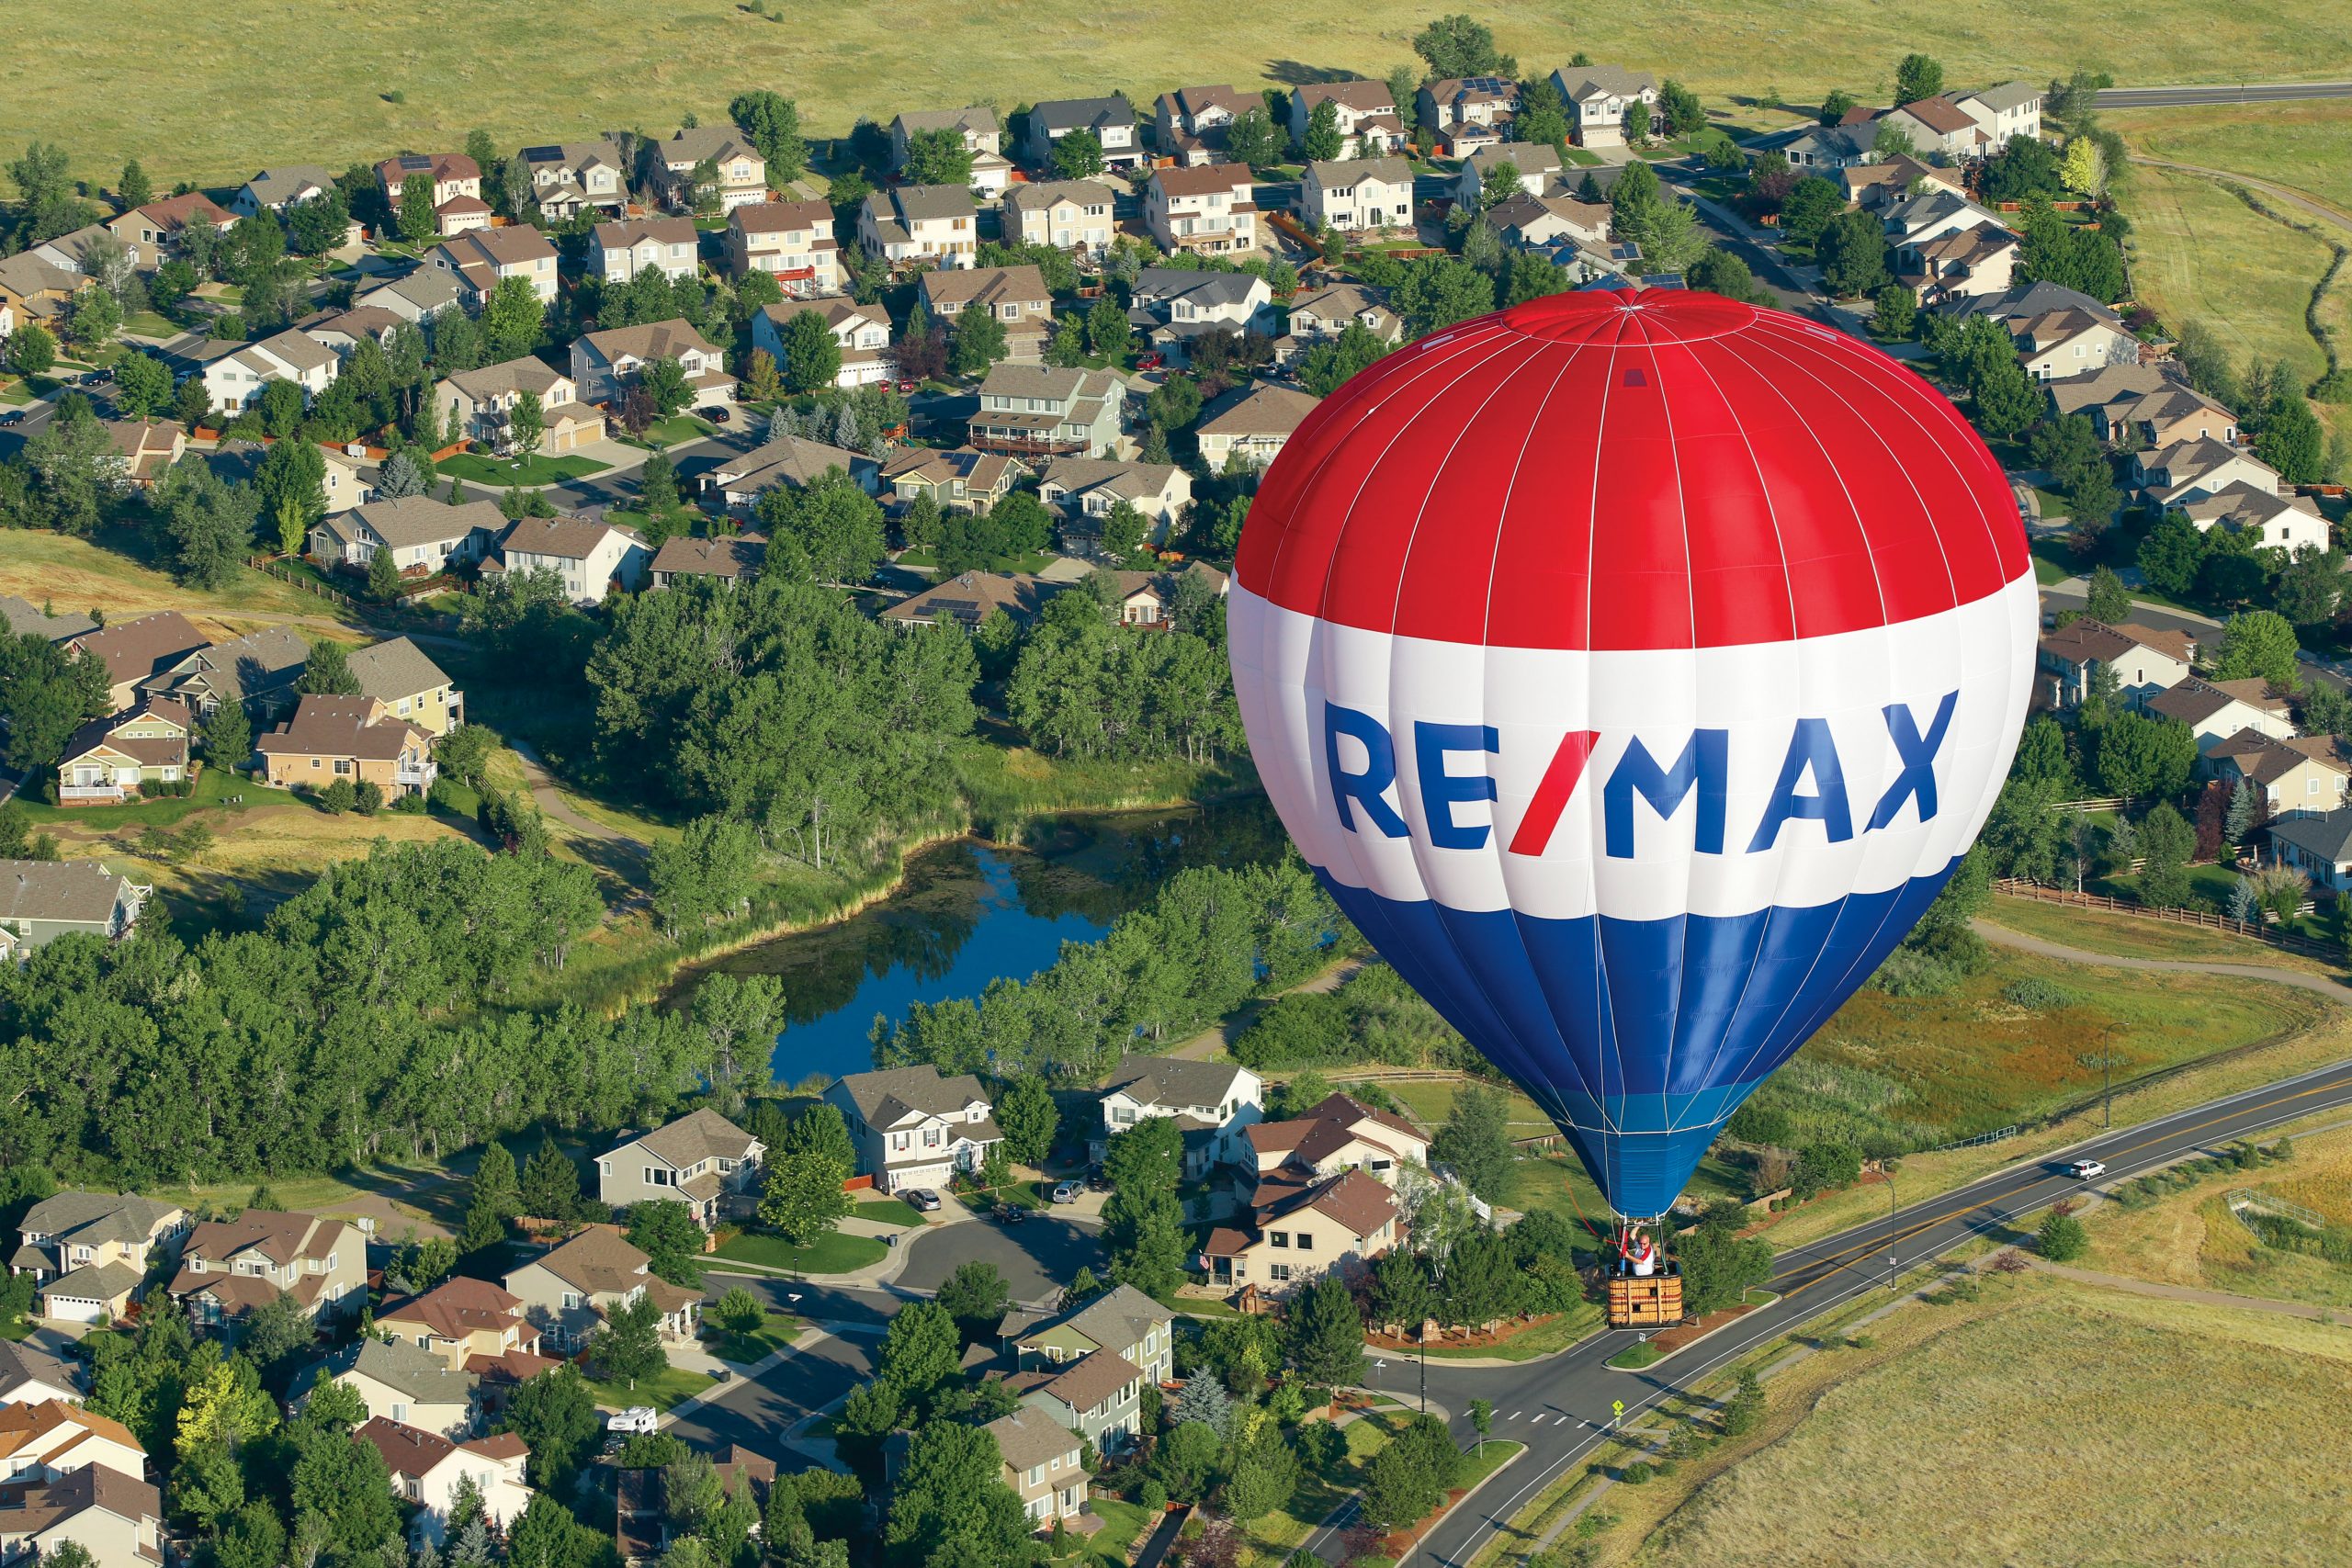 RE/MAX, liderul mondial în vânzări de imobiliare, își pune amprenta pe piața din Republica Moldova și o aduce la standarde internaționale 